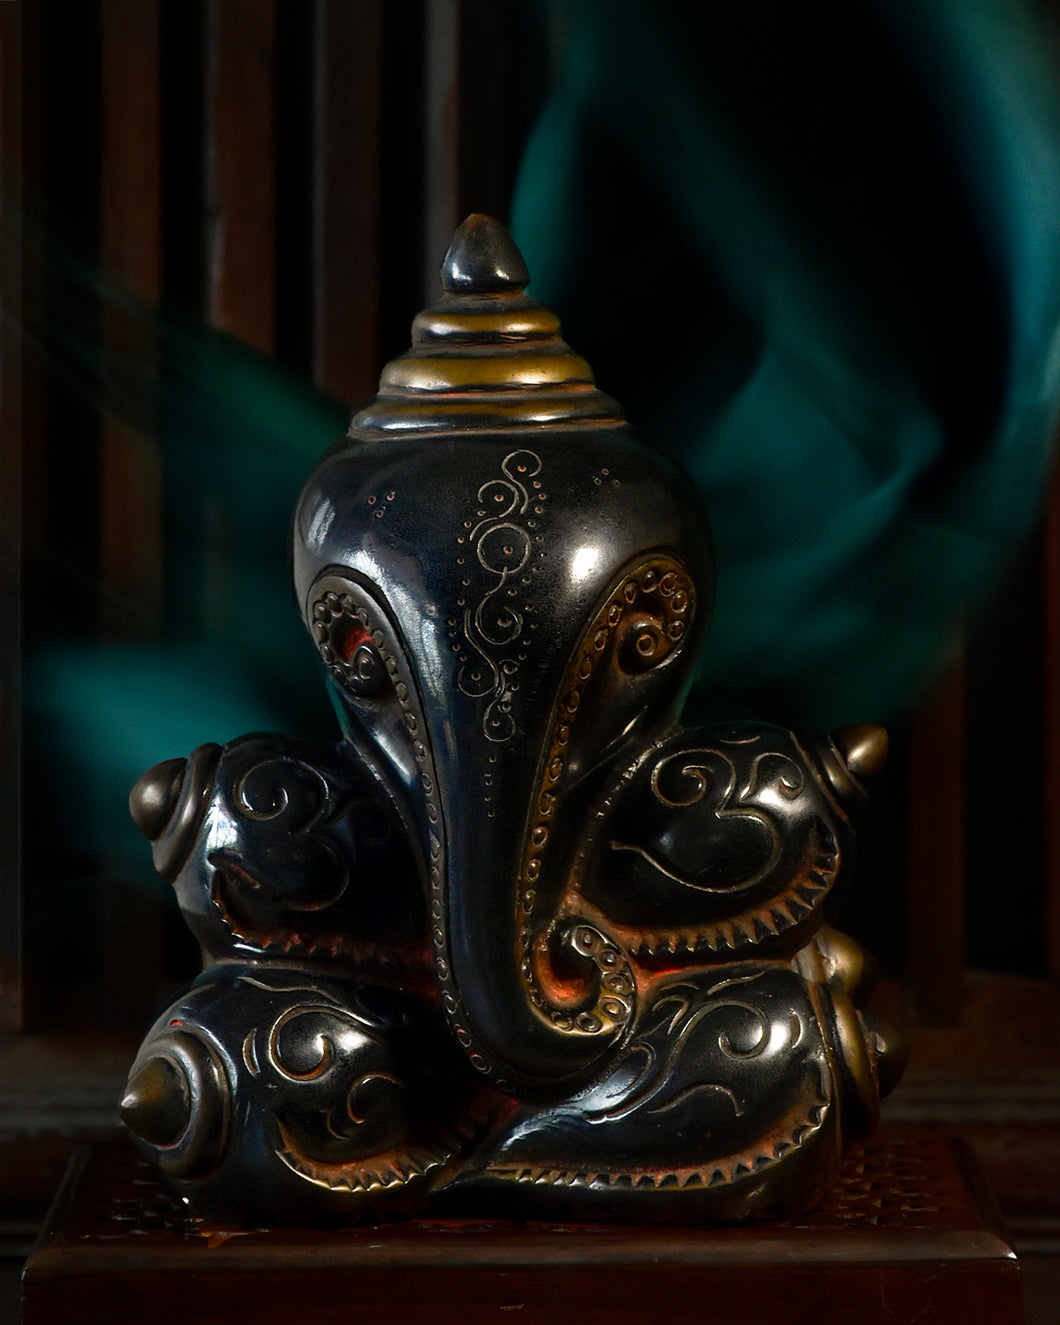 Obsidian Ganesha - The Verasaa Collections